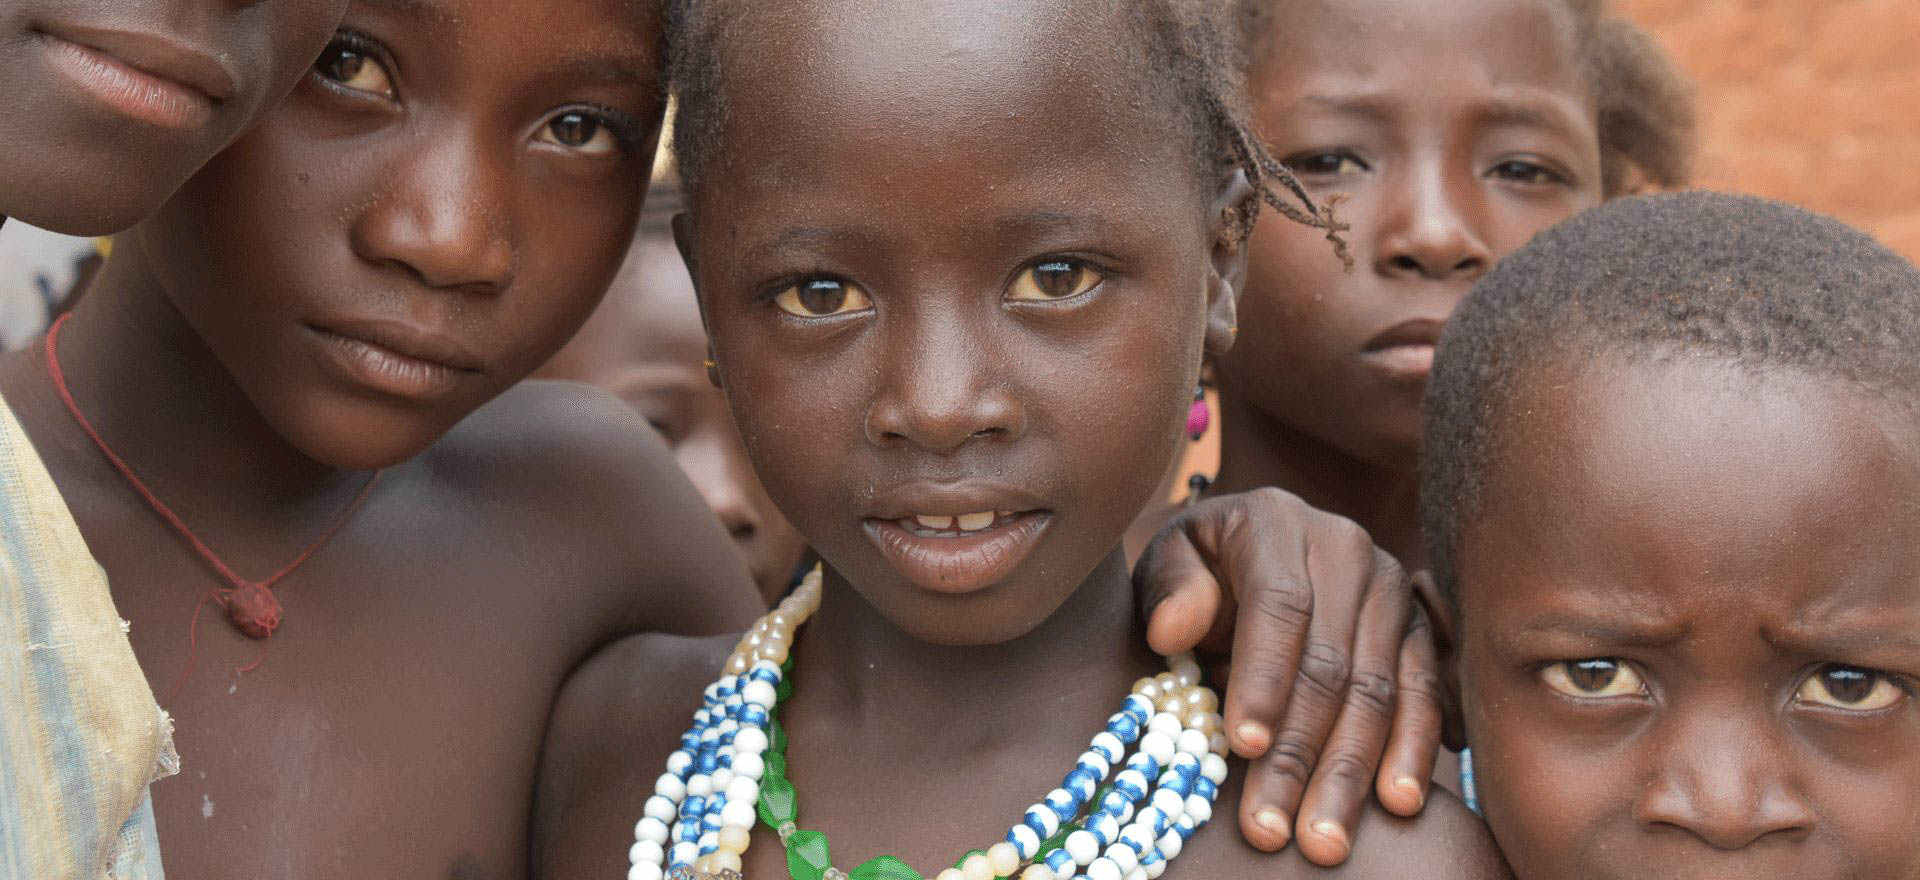 Children in rural village - Nigeria holidays